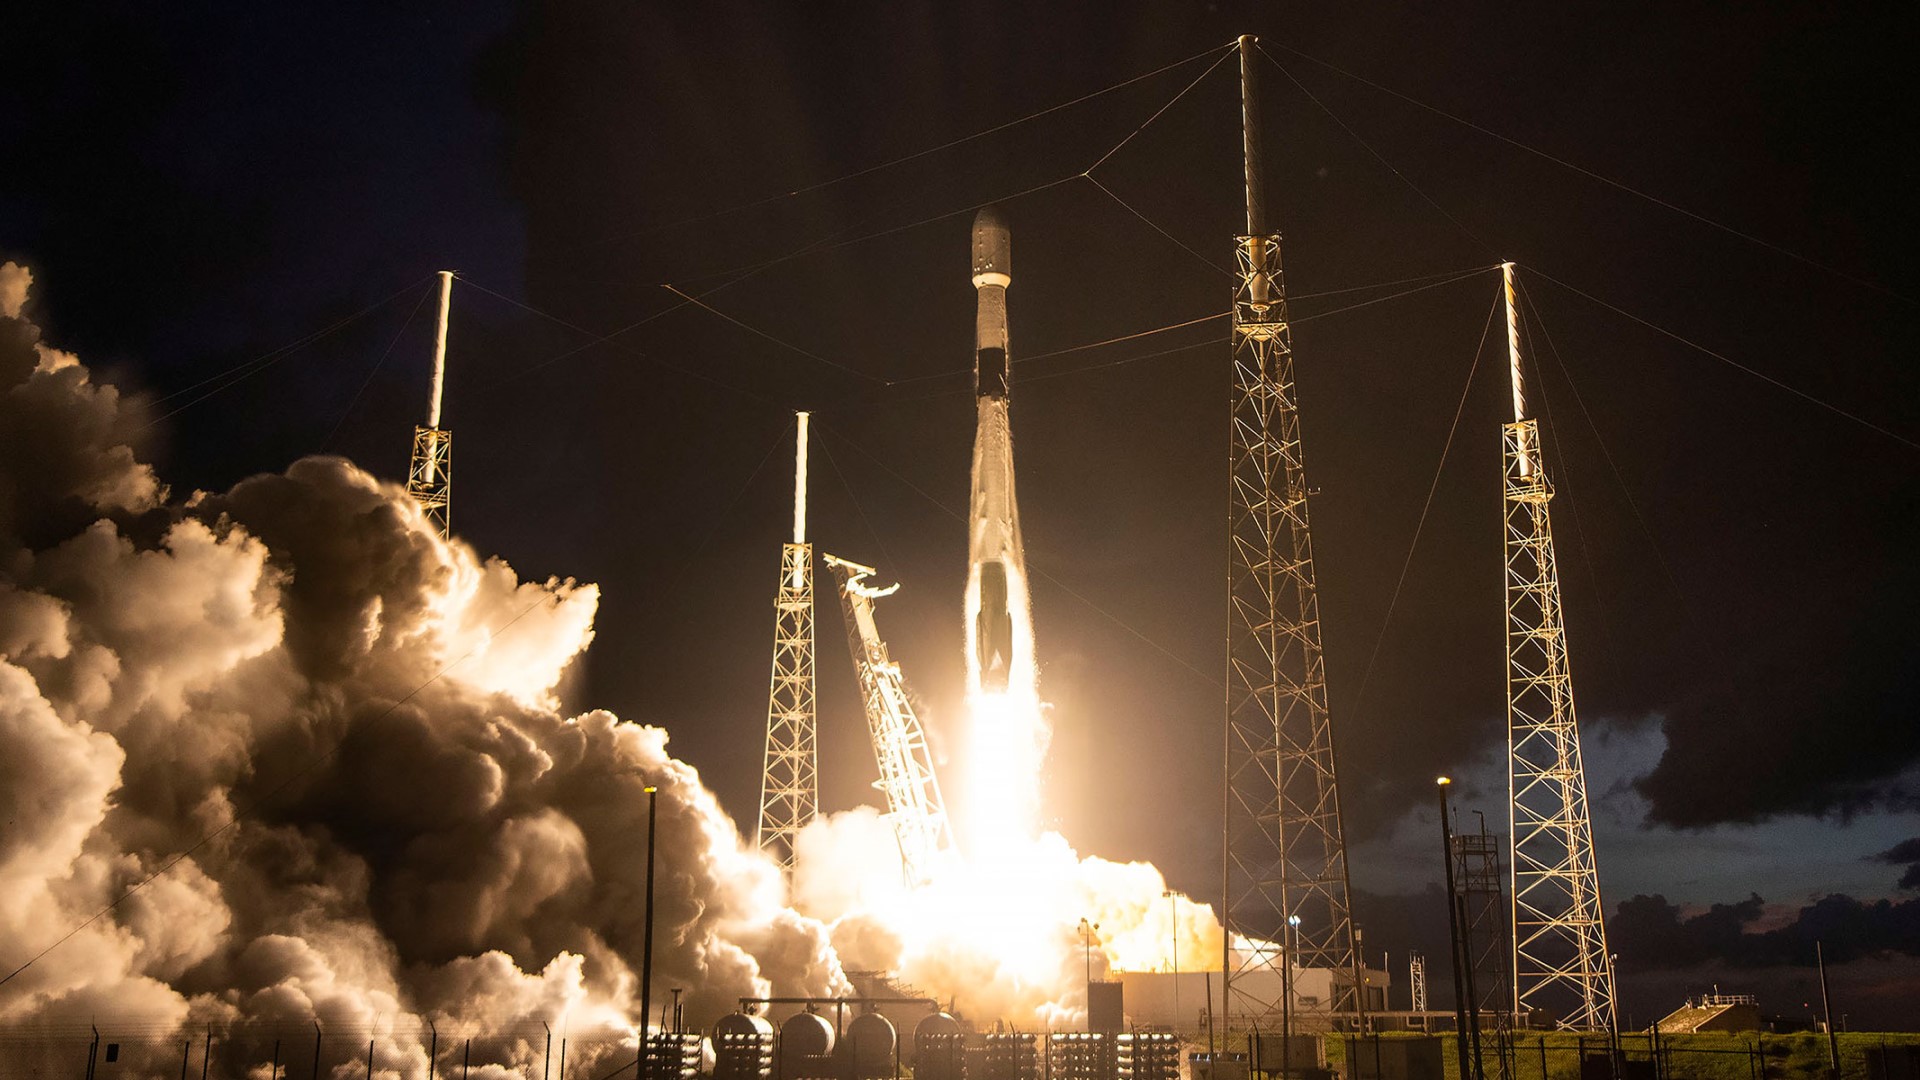 SpaceX กำลังจะปล่อยภารกิจ Group 7-2 ในการส่งดาวเทียม Starlink เพิ่มอีก 21 ดวง